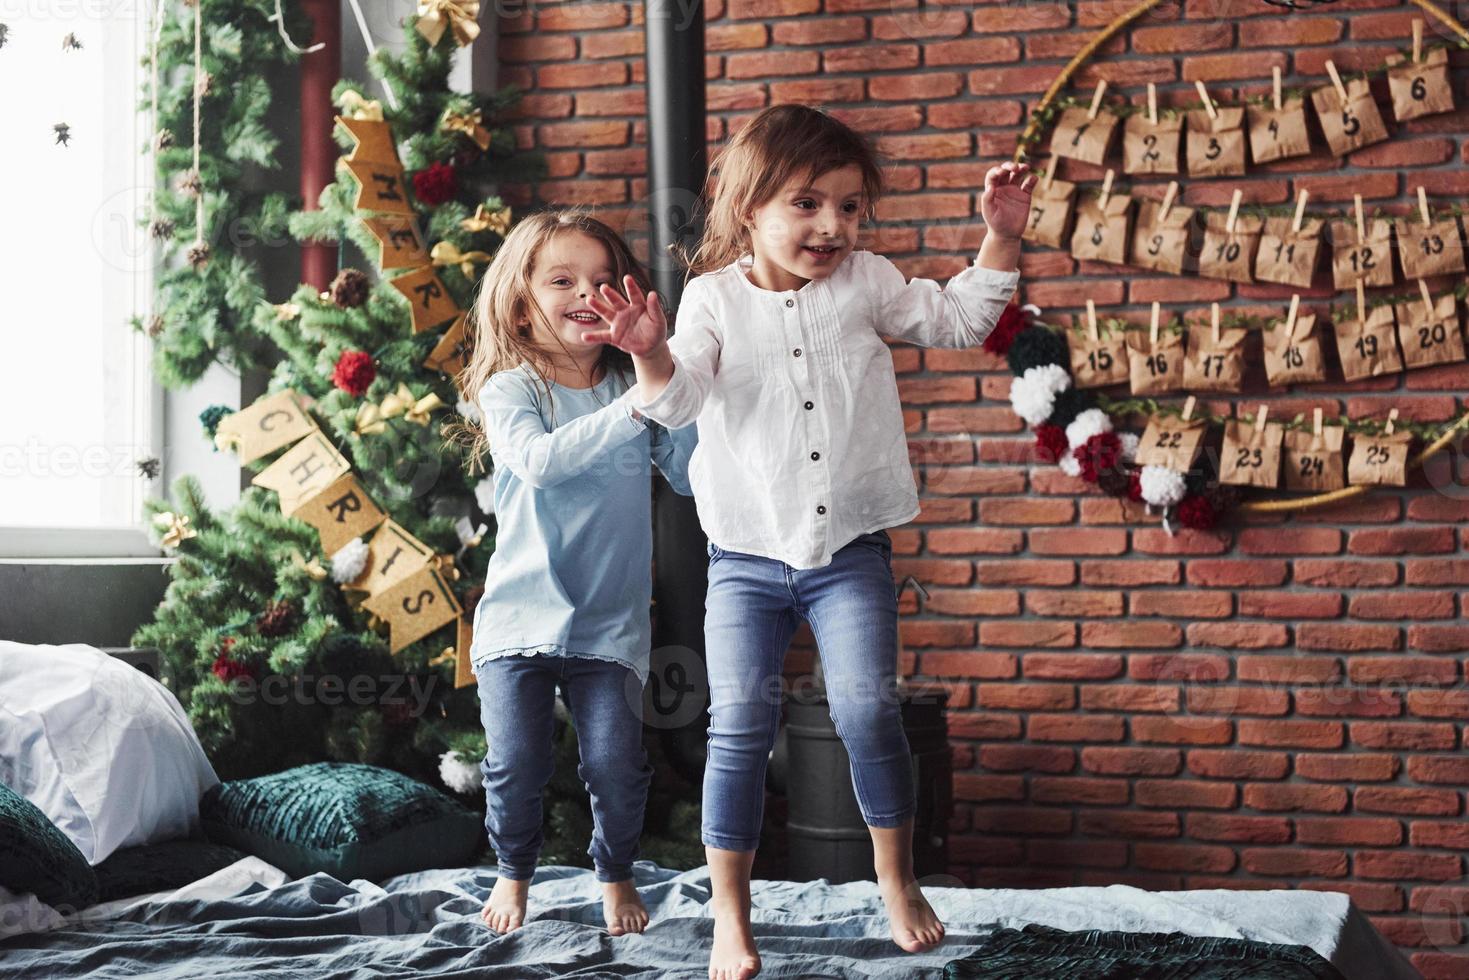 letras na árvore significam feliz natal. crianças alegres se divertindo e pulando na cama com fundo decorativo de férias foto